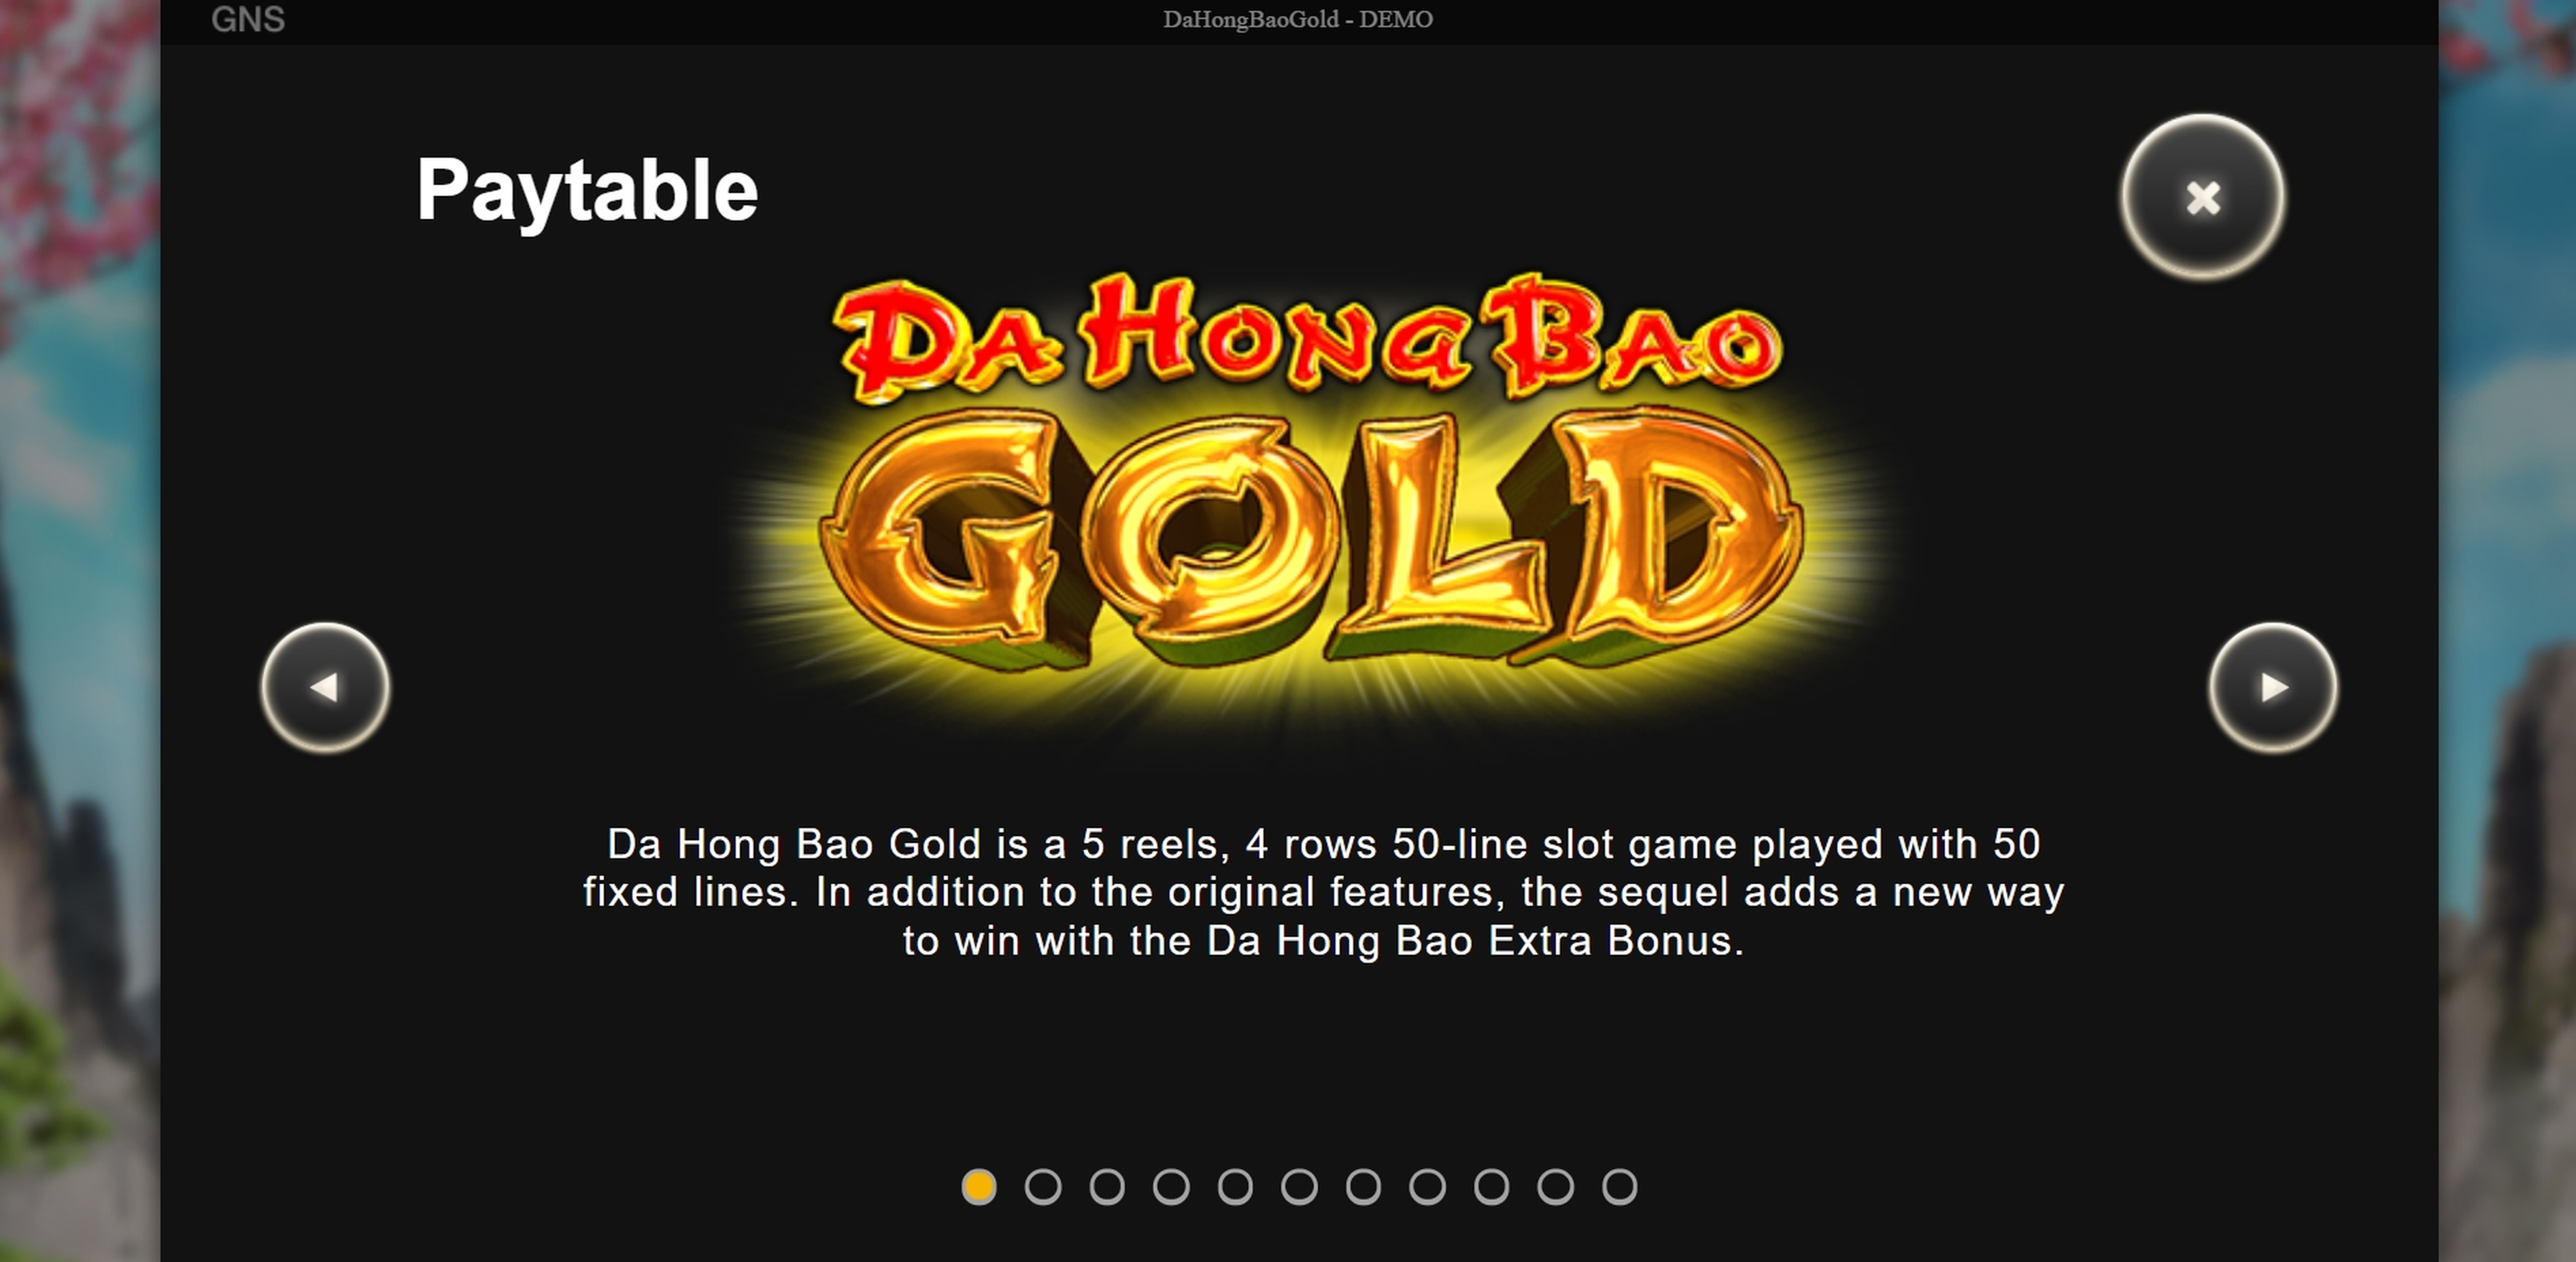 Info of Da Hong Bao Gold Slot Game by Genesis Gaming